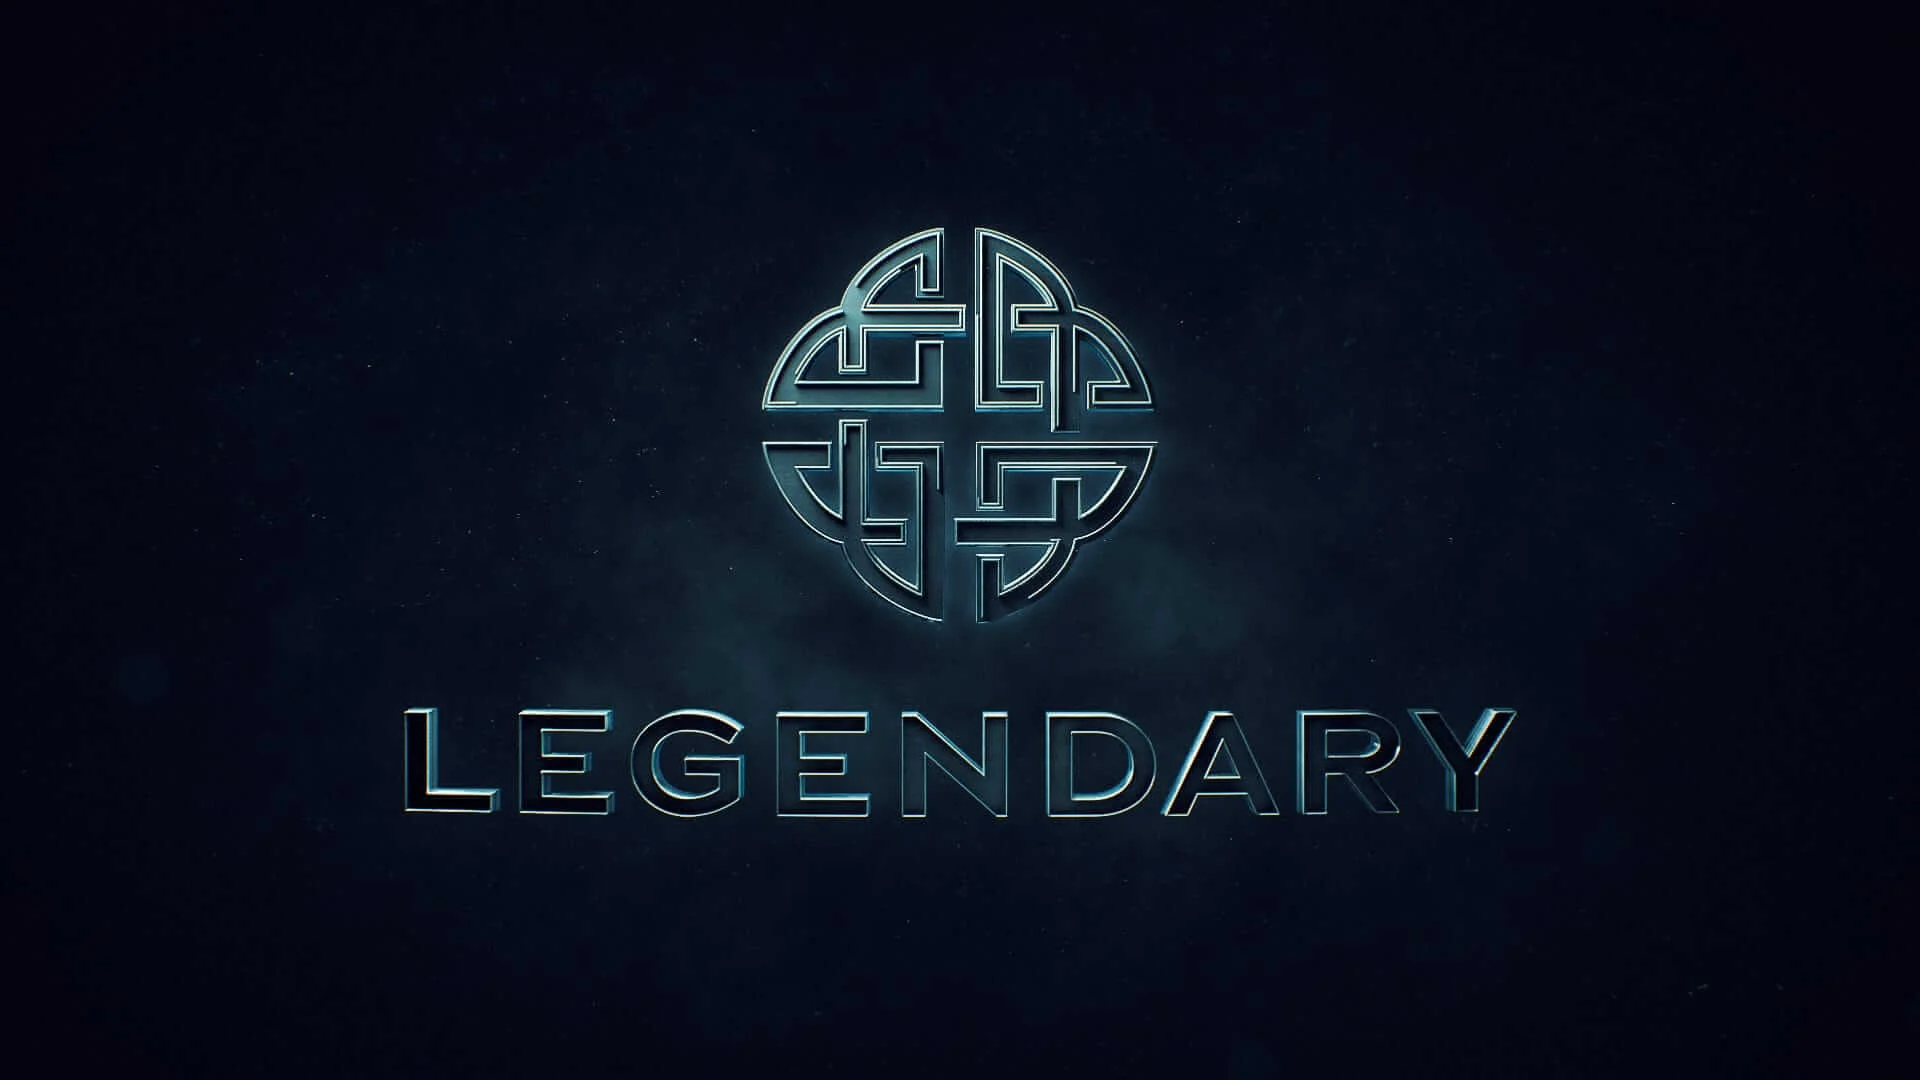 A Legendary Entertainment nem szeretné meghosszabbítani együttműködését a Warner Bros. stúdióval